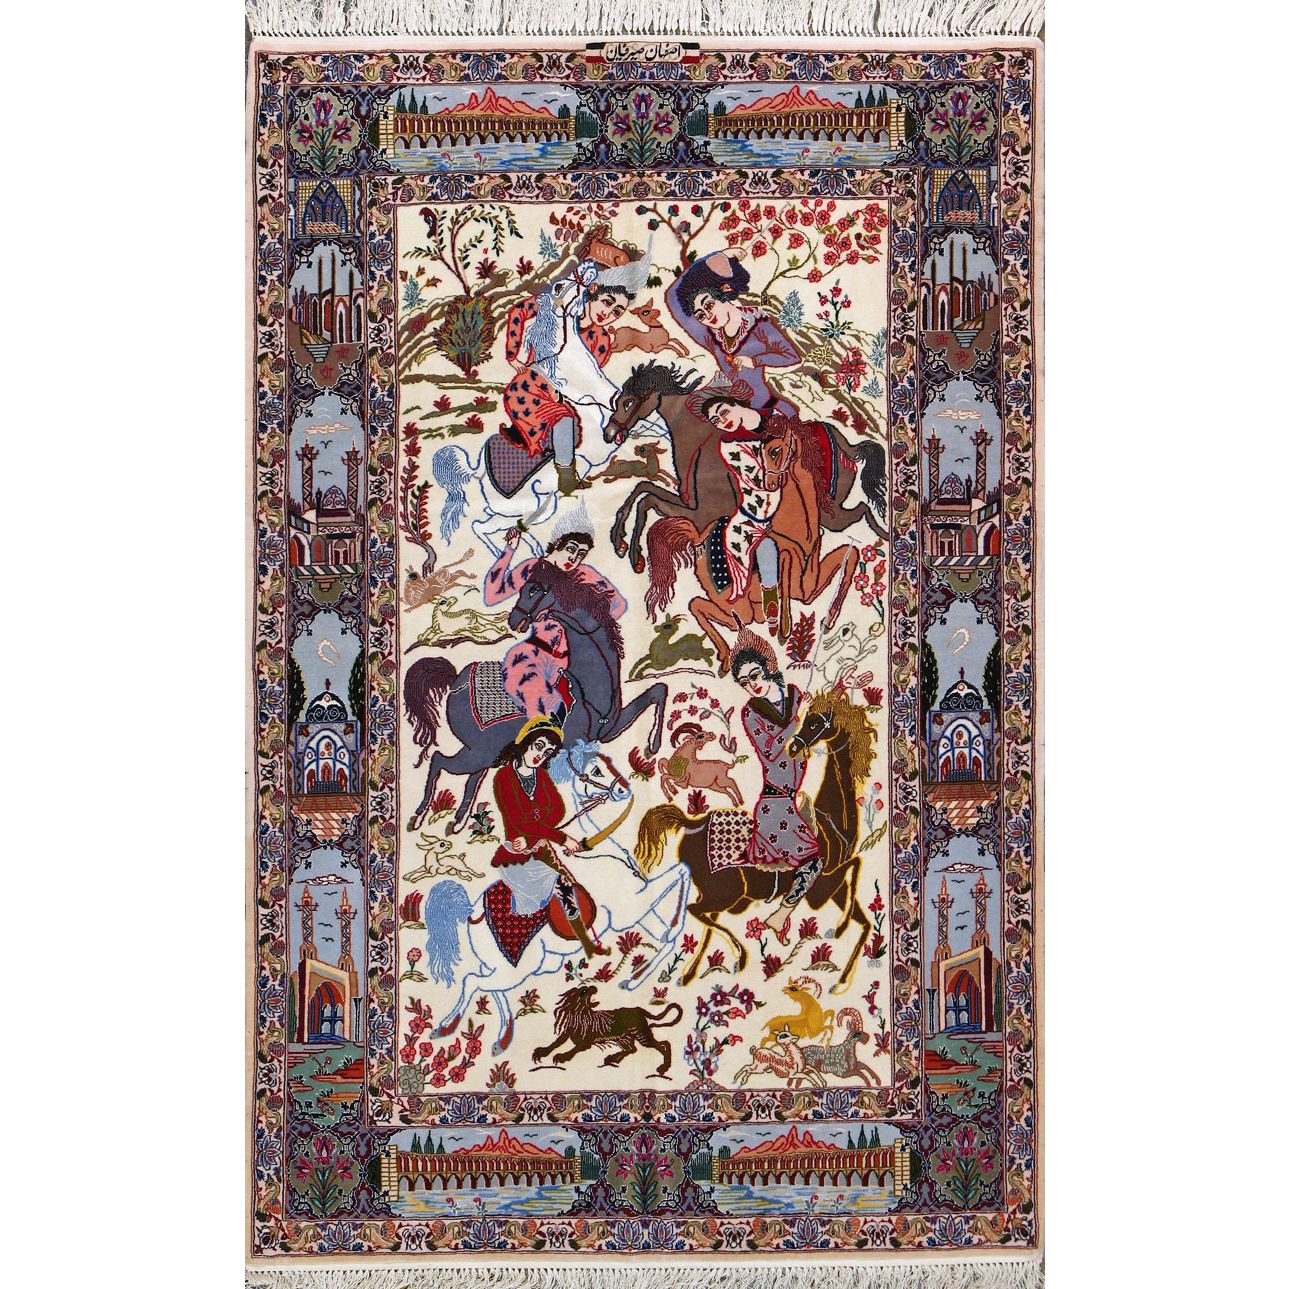 Armanrugs | Traditional Persian Rugs | 2227 S Huron Dr, Santa Ana, CA 92704 | Phone: (888) 988-7847